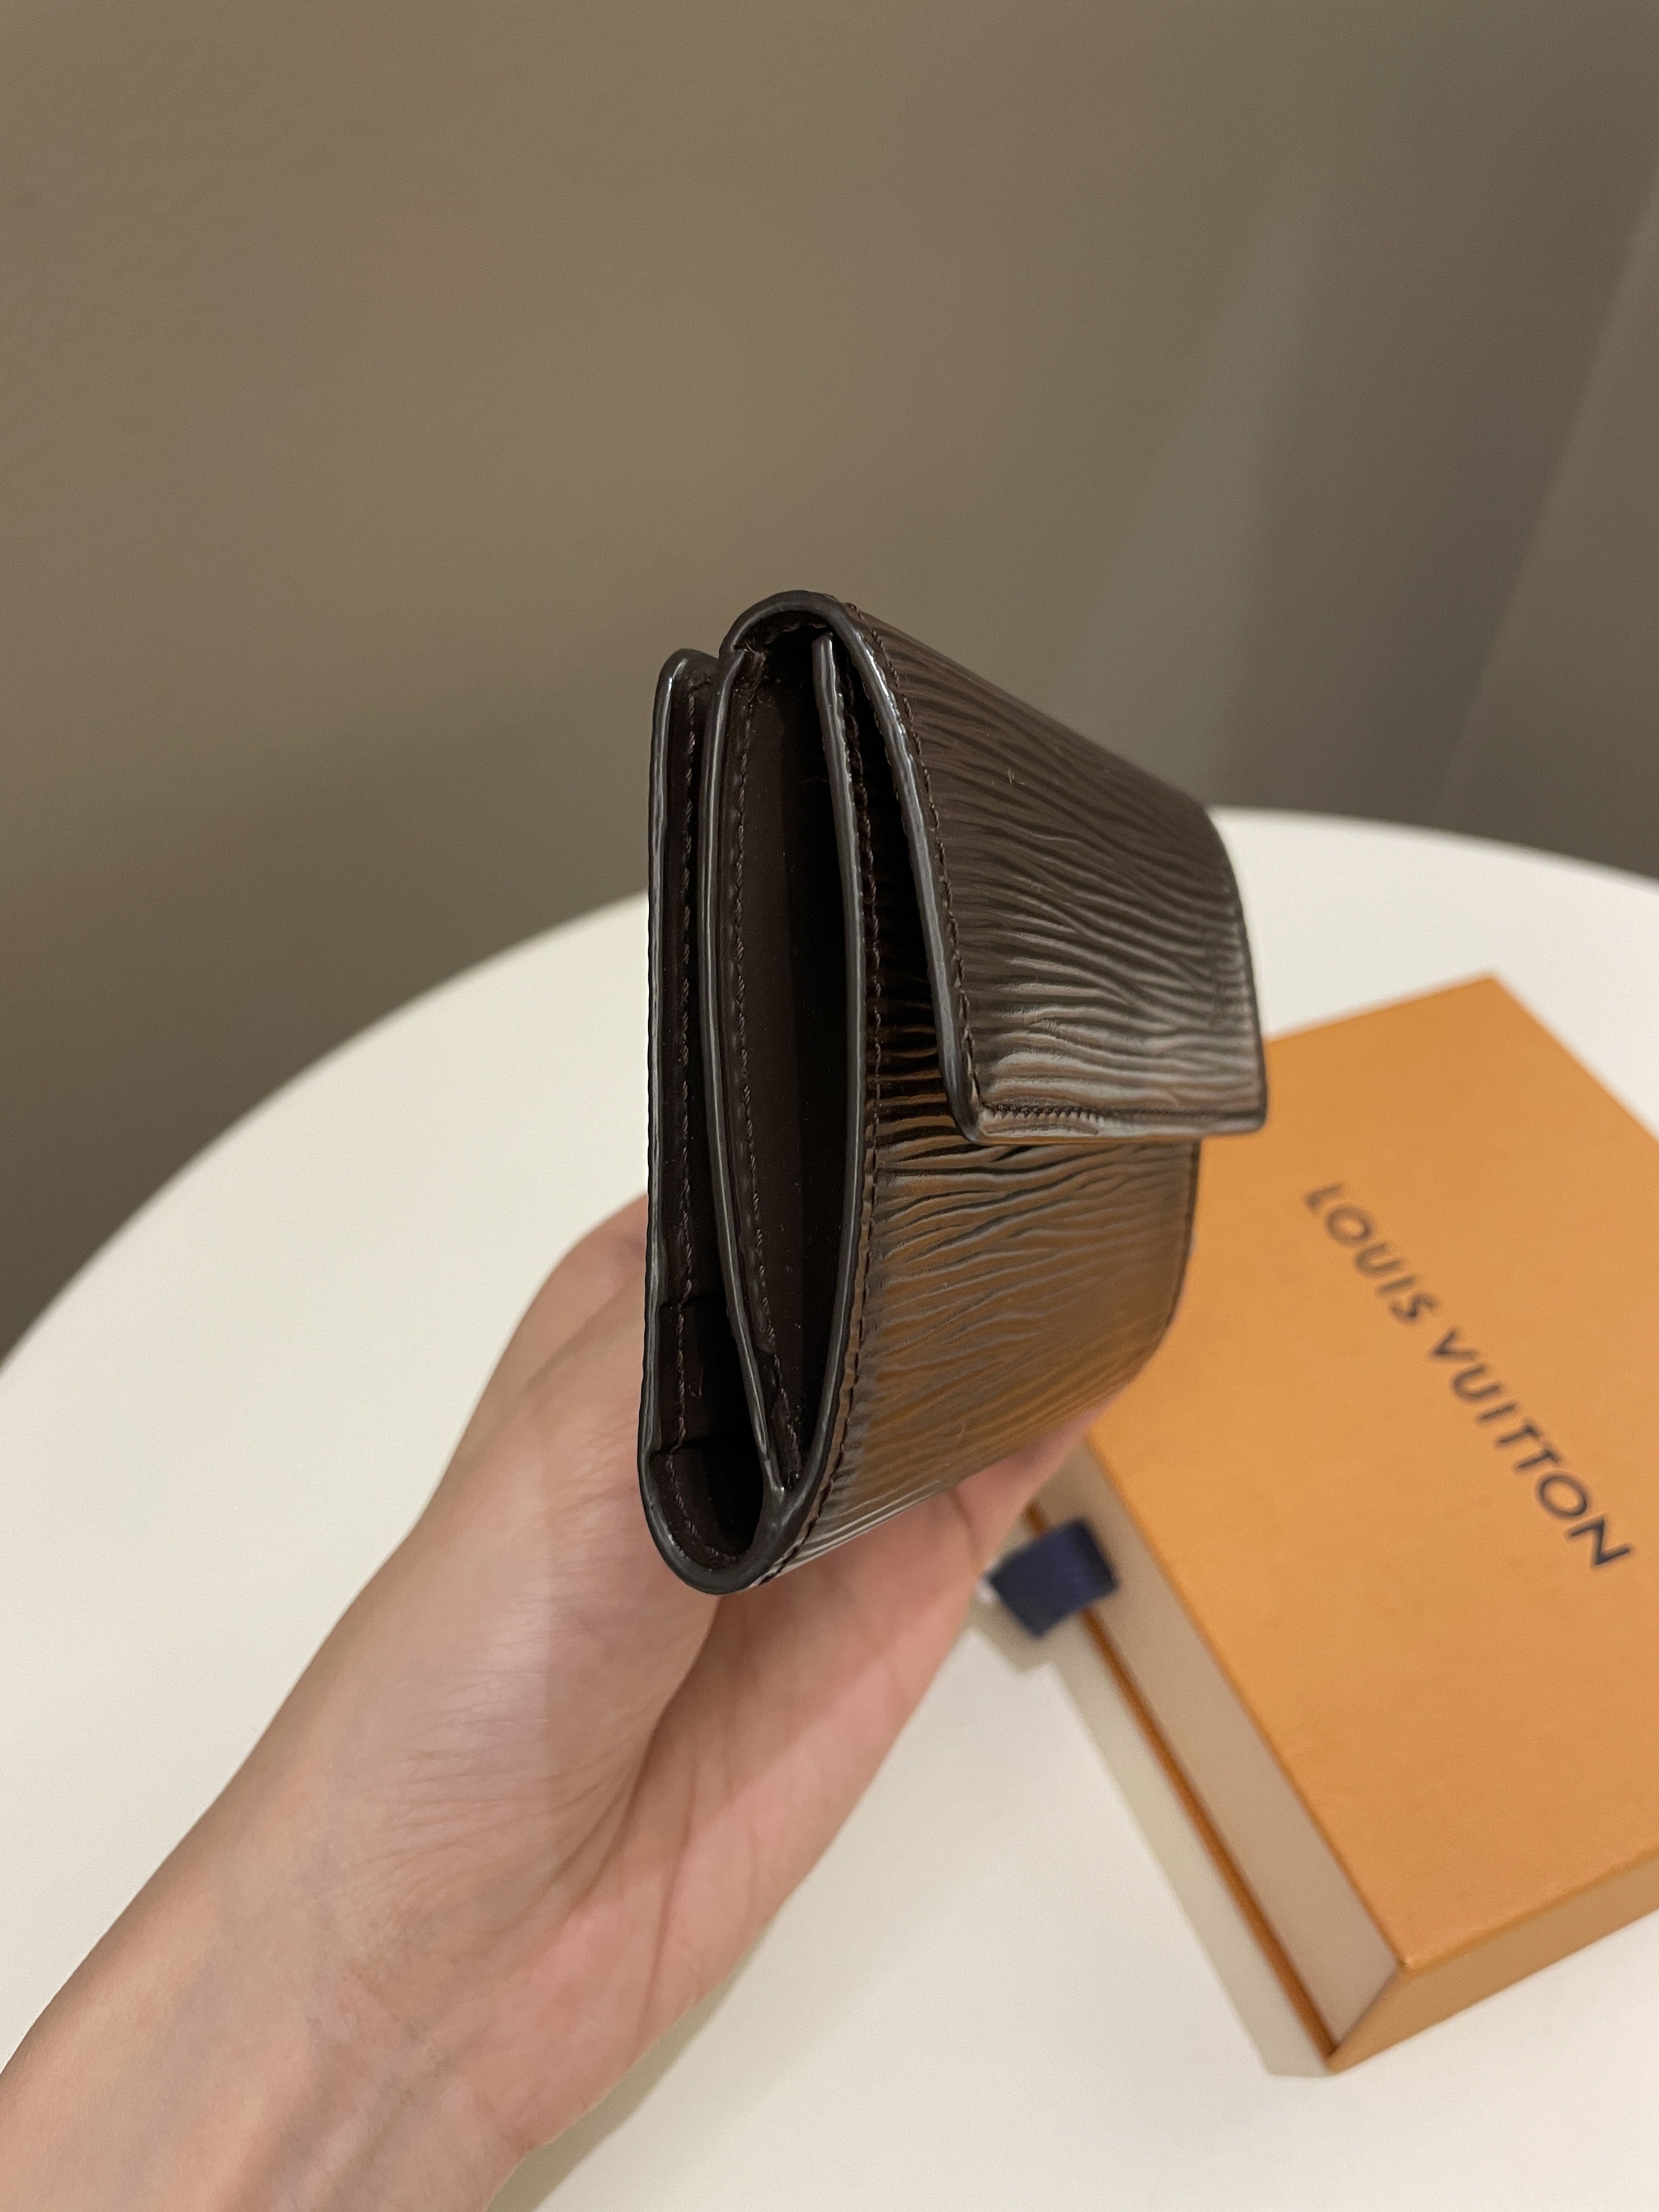 Louis Vuitton Card Holder
Dark Brown Epi Leather